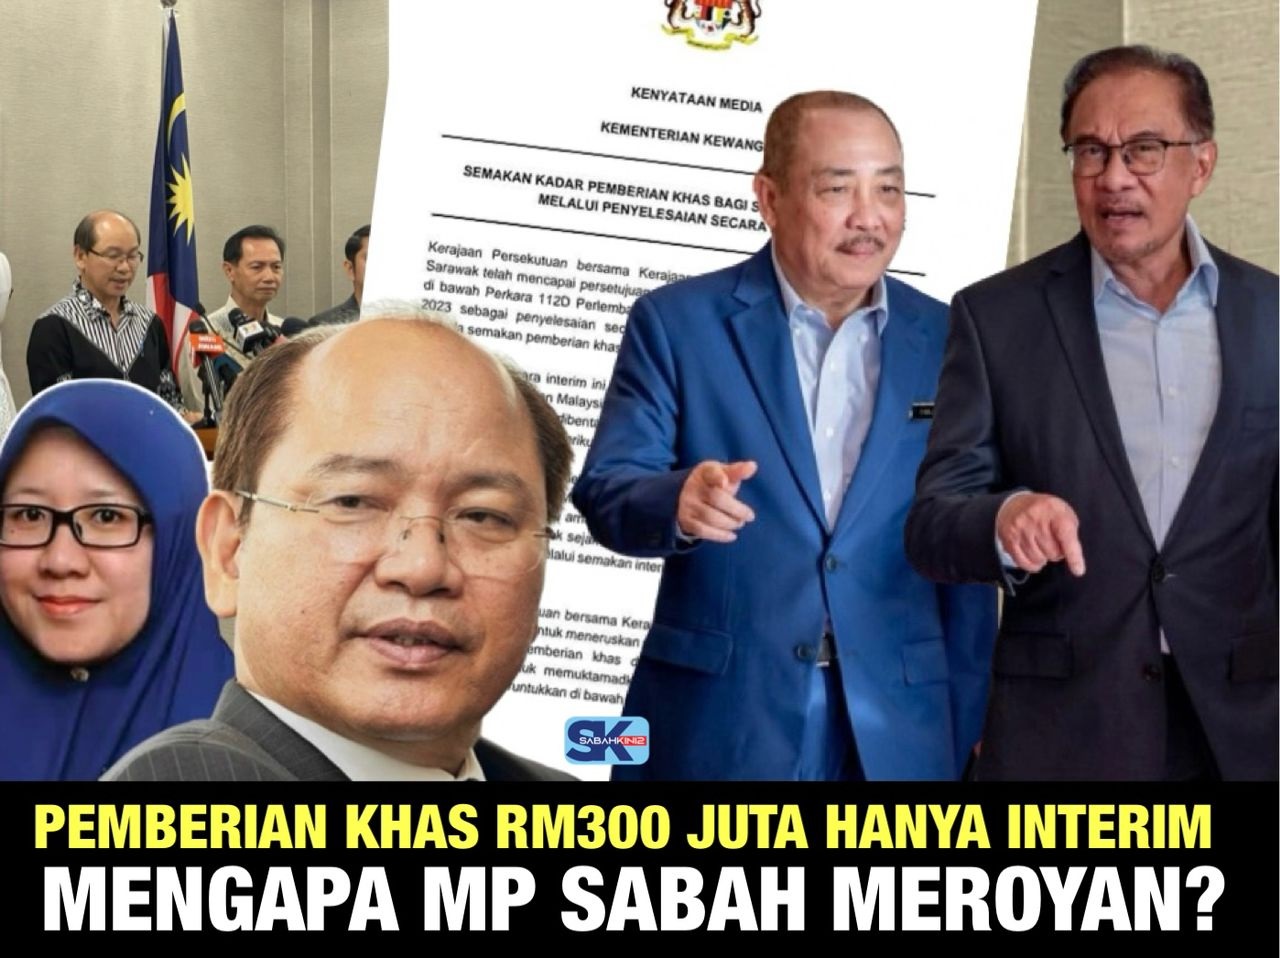 [VIDEO] Pemberian khas RM300 juta hanya penyelesaian interim,  tidak hapuskan tuntutan 40 peratus hasil Sabah, Sarawak